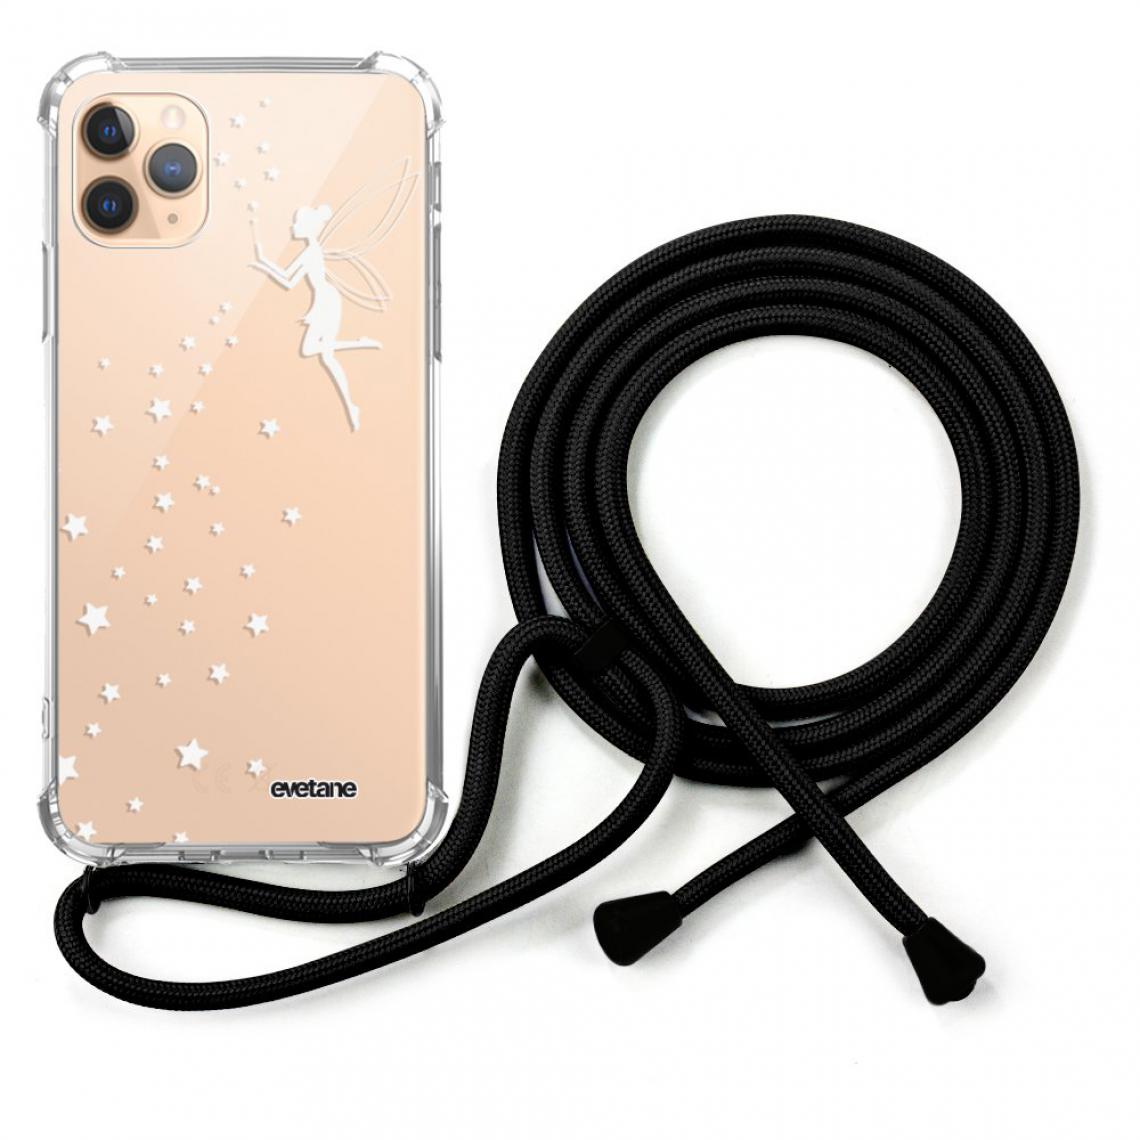 Evetane - Coque iPhone 11 Pro coque avec cordon transparente Fée Blanche - Coque, étui smartphone